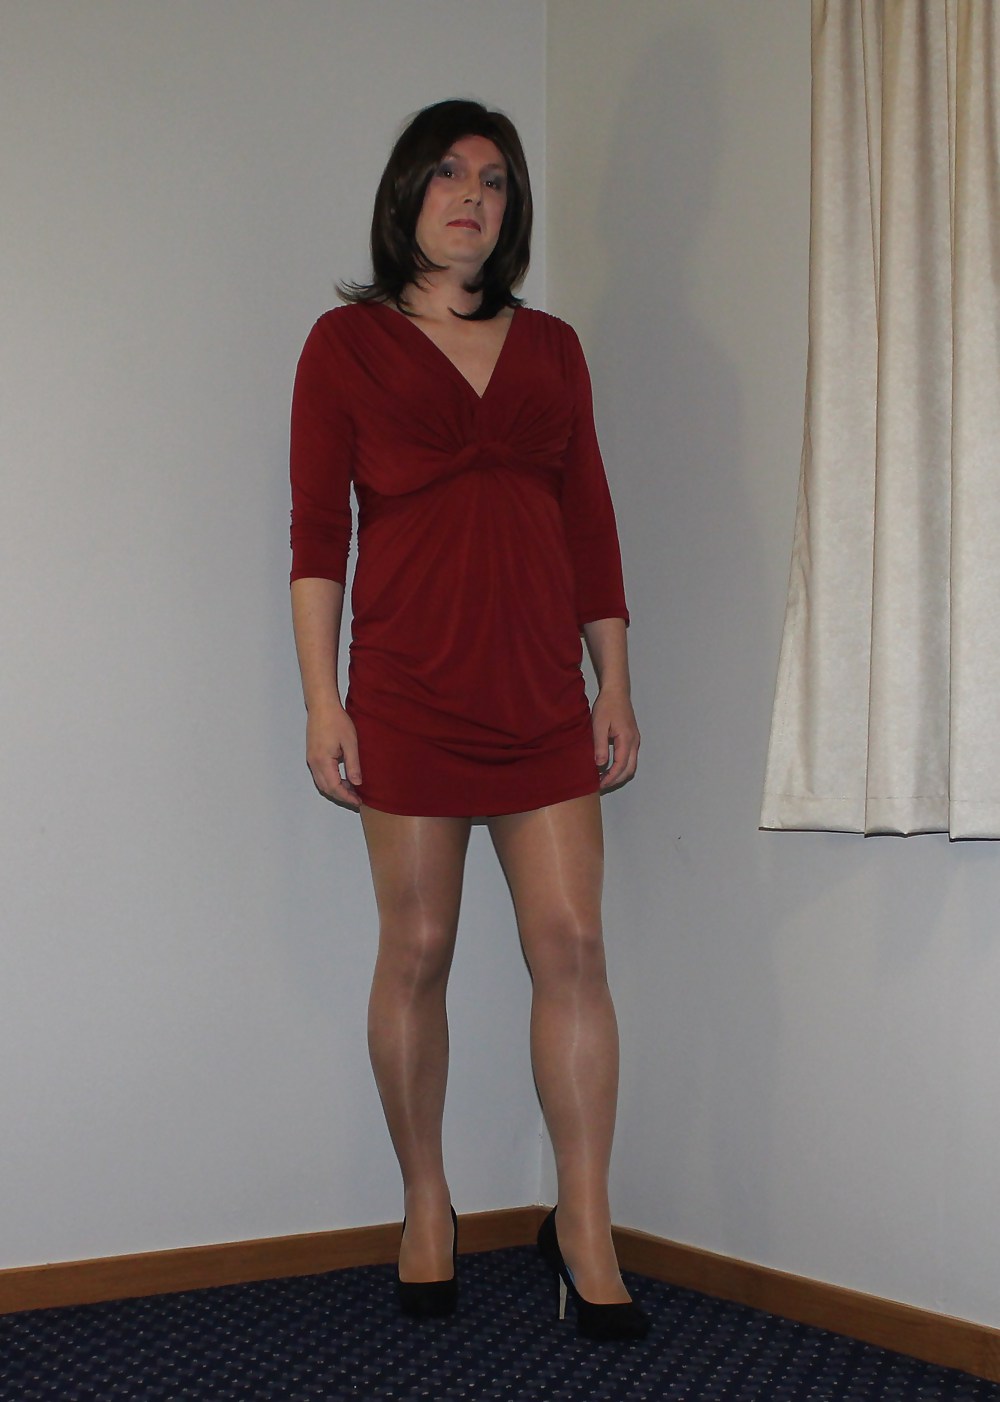 Roten Kleid Und Glänzende Strumpfhosen #17247981